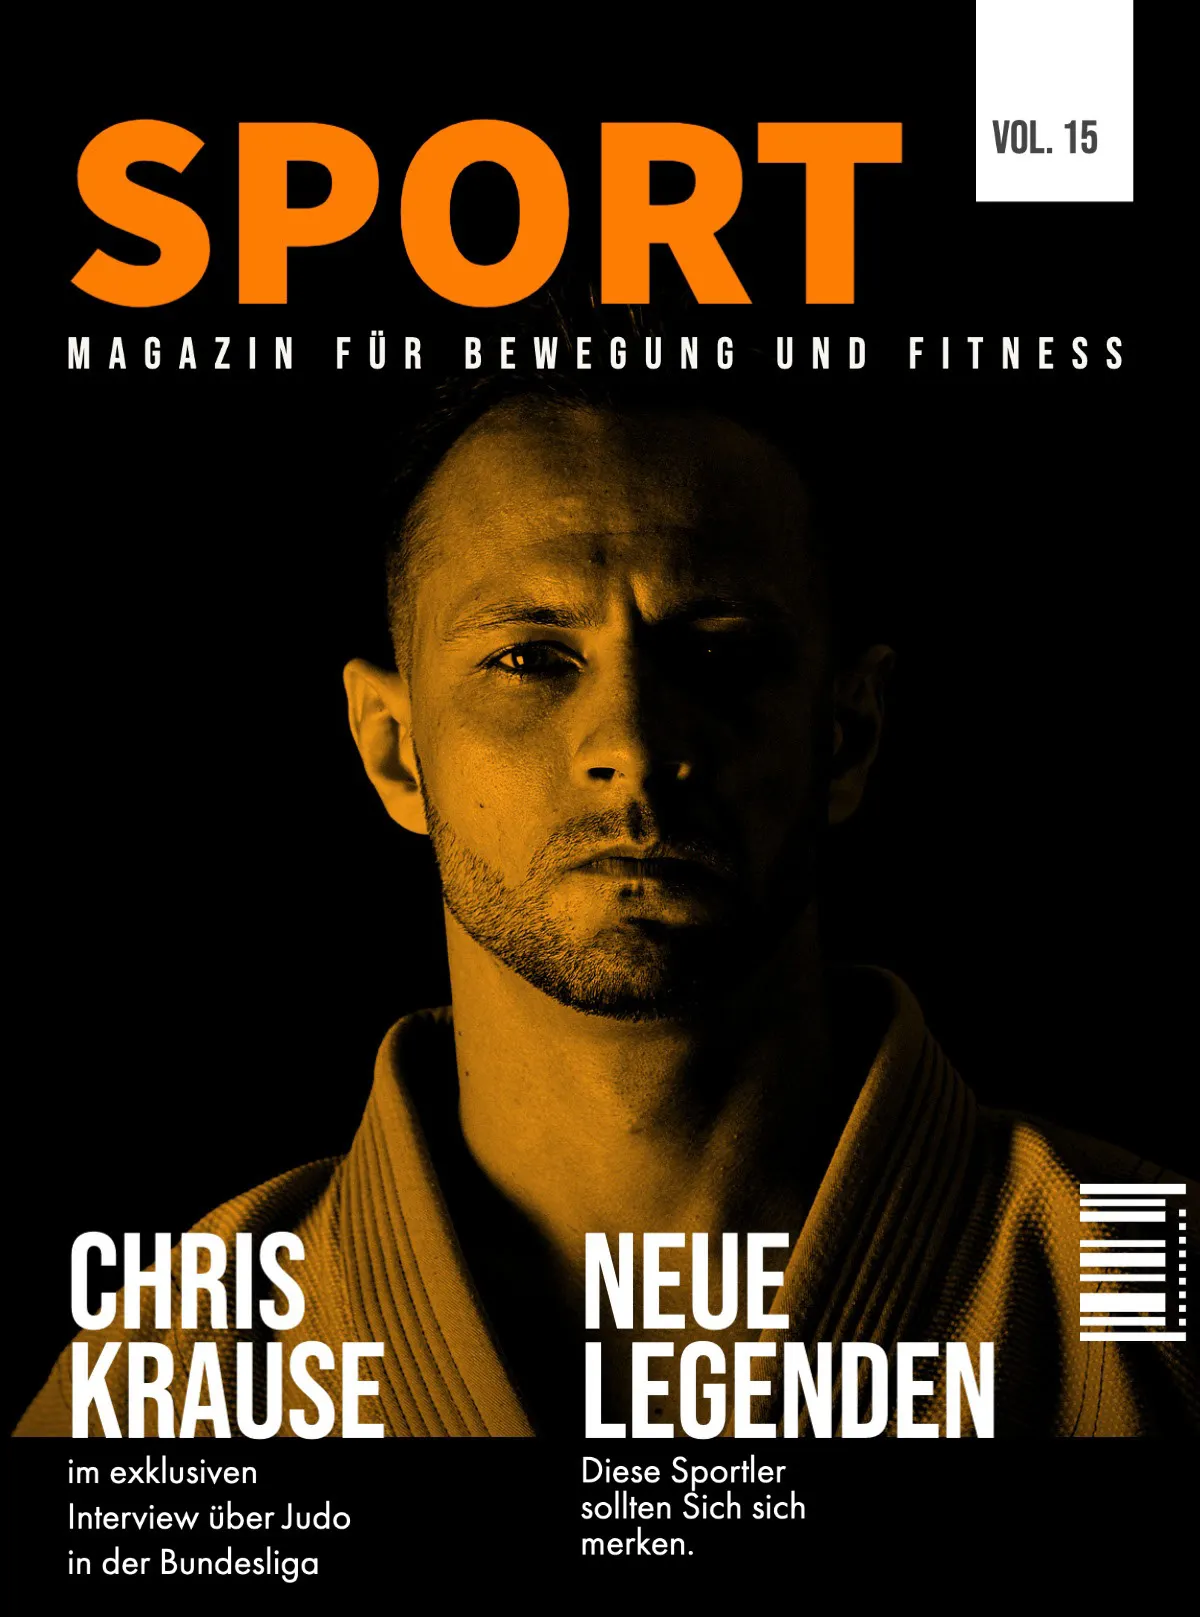 Black & White Sepia Sports Magazine Cover